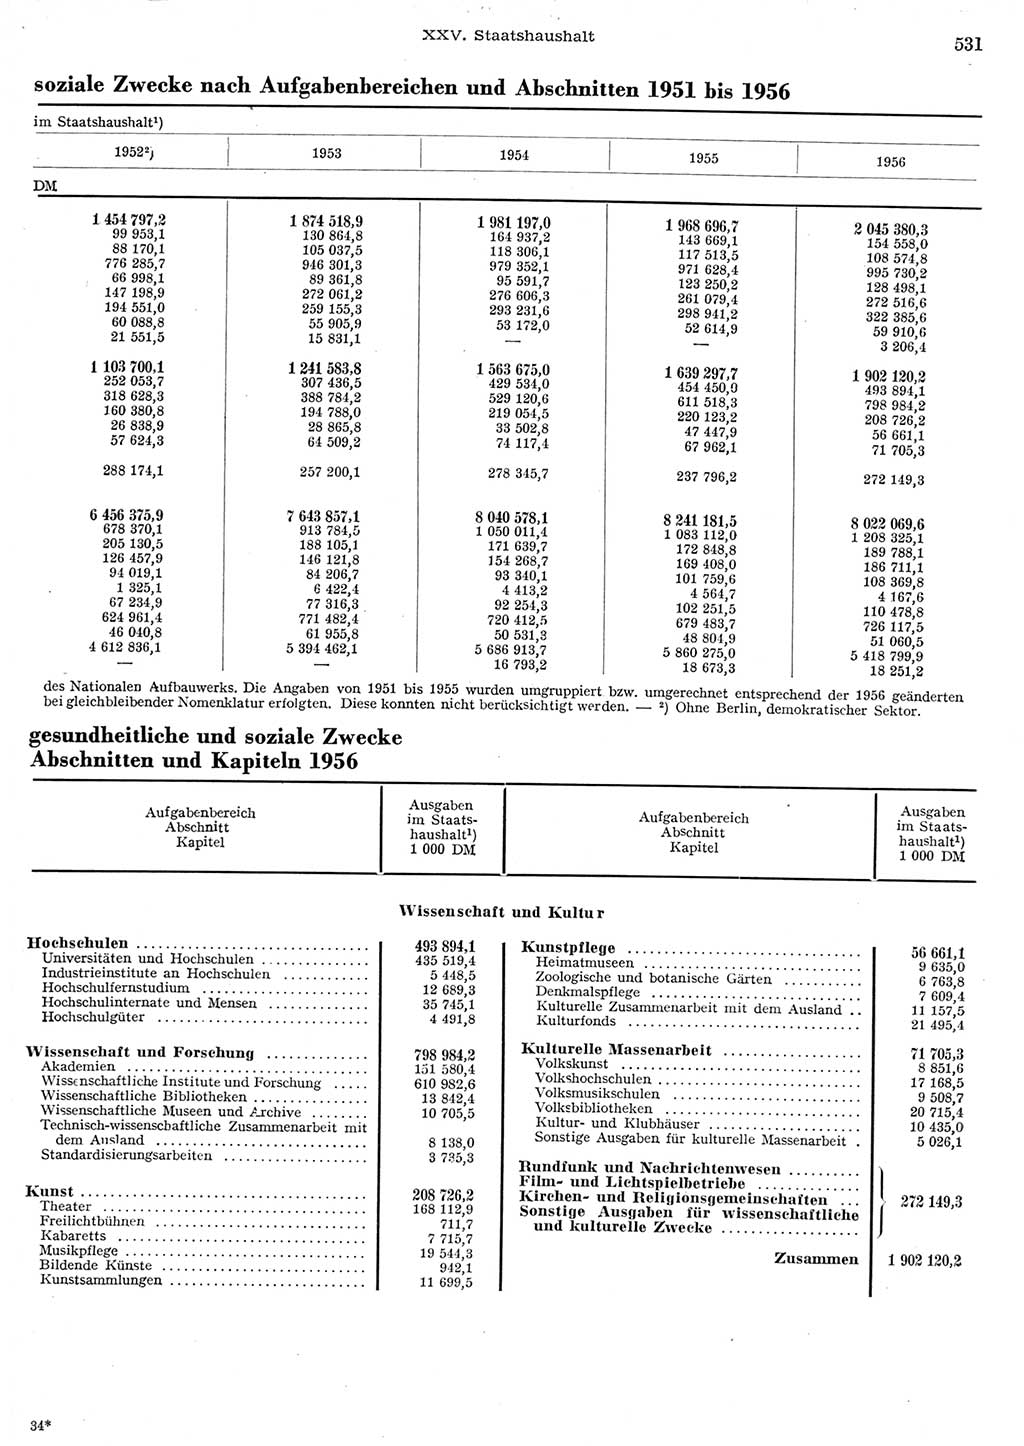 Statistisches Jahrbuch der Deutschen Demokratischen Republik (DDR) 1956, Seite 531 (Stat. Jb. DDR 1956, S. 531)